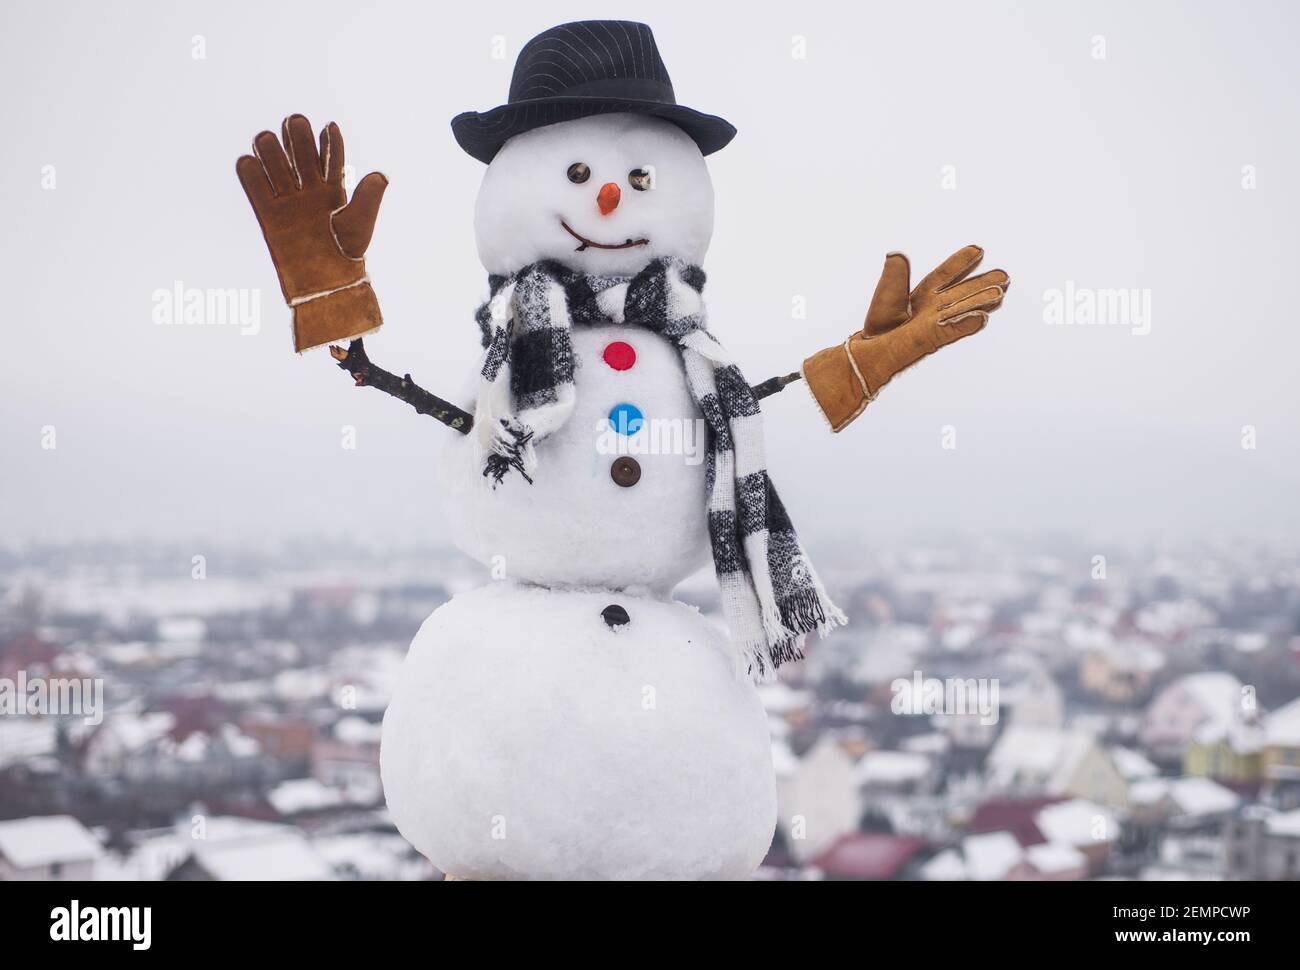 Bonhomme de neige en bonnet, écharpe et gants élégants. Bonhommes de neige amusants. Joyeuses fêtes. Banque D'Images